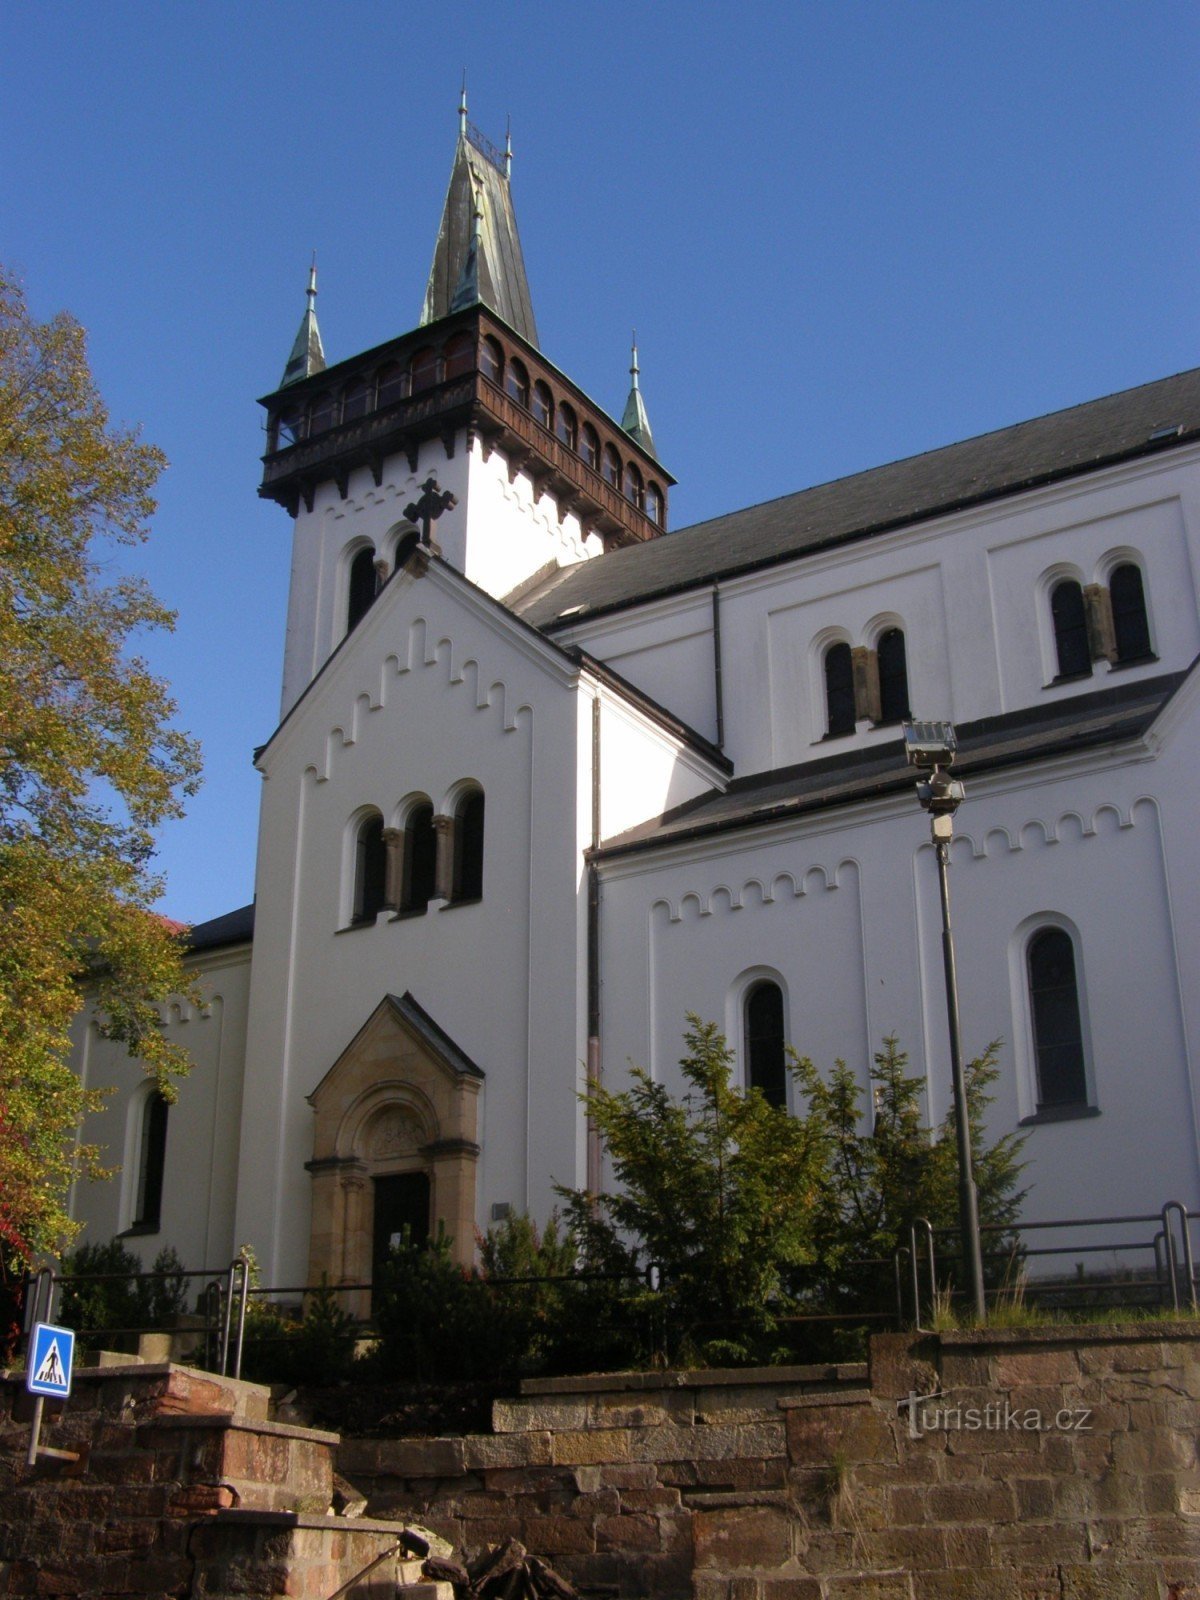 Semily - Biserica Sf. Petru și Pavel